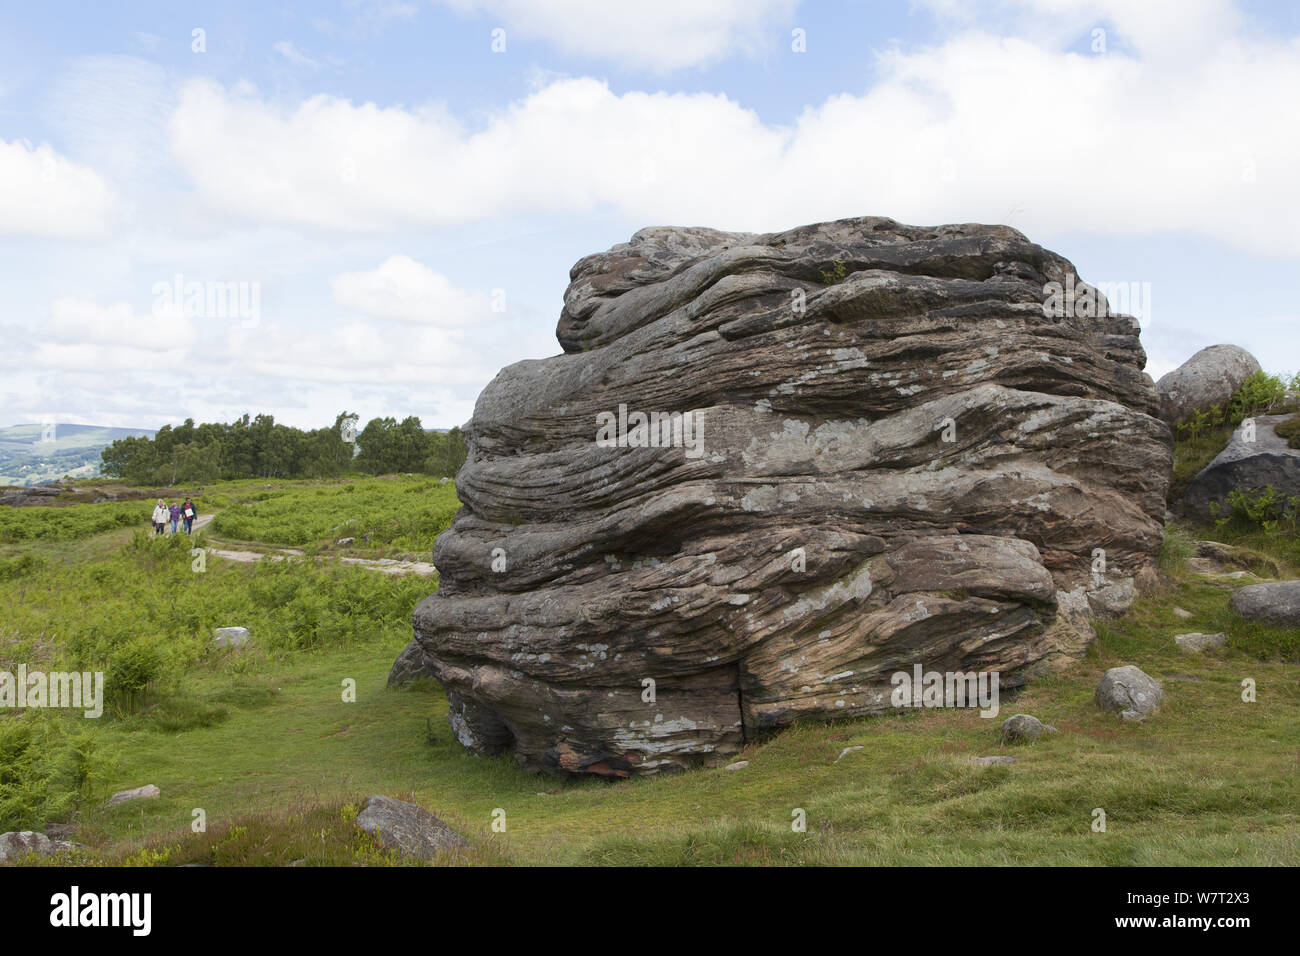 Arenaria spiovente sperone di roccia sul bordo Froggatt, Derbyshire, che mostra i piani di biancheria da letto, England, Regno Unito, Giugno Foto Stock